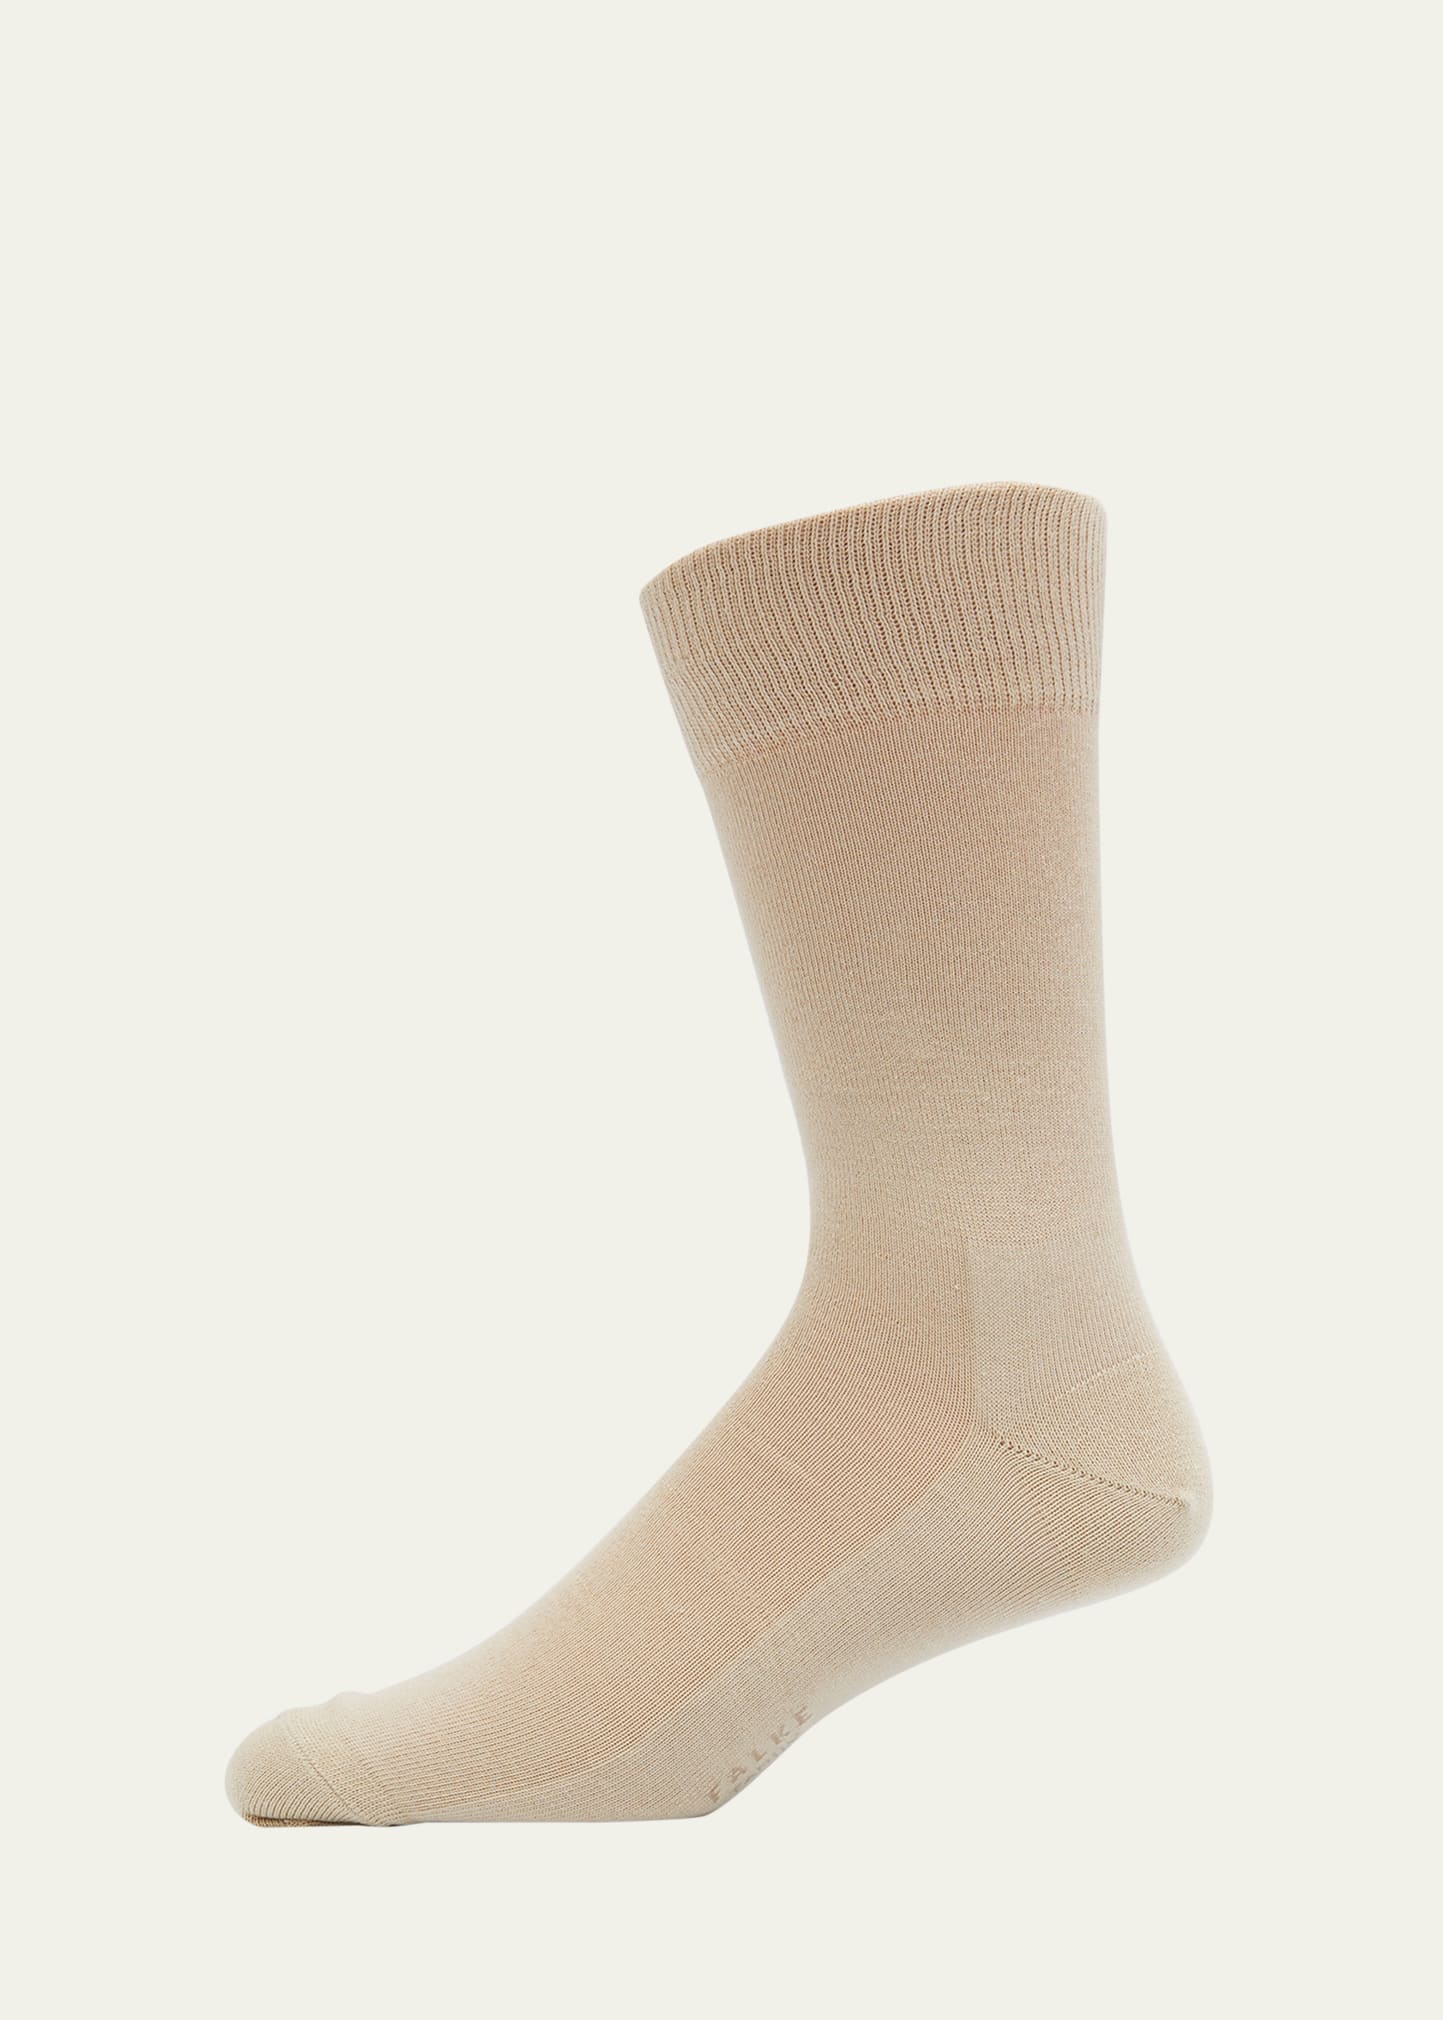 Falke Men's Family Cotton Mid-calf Socks In Sand